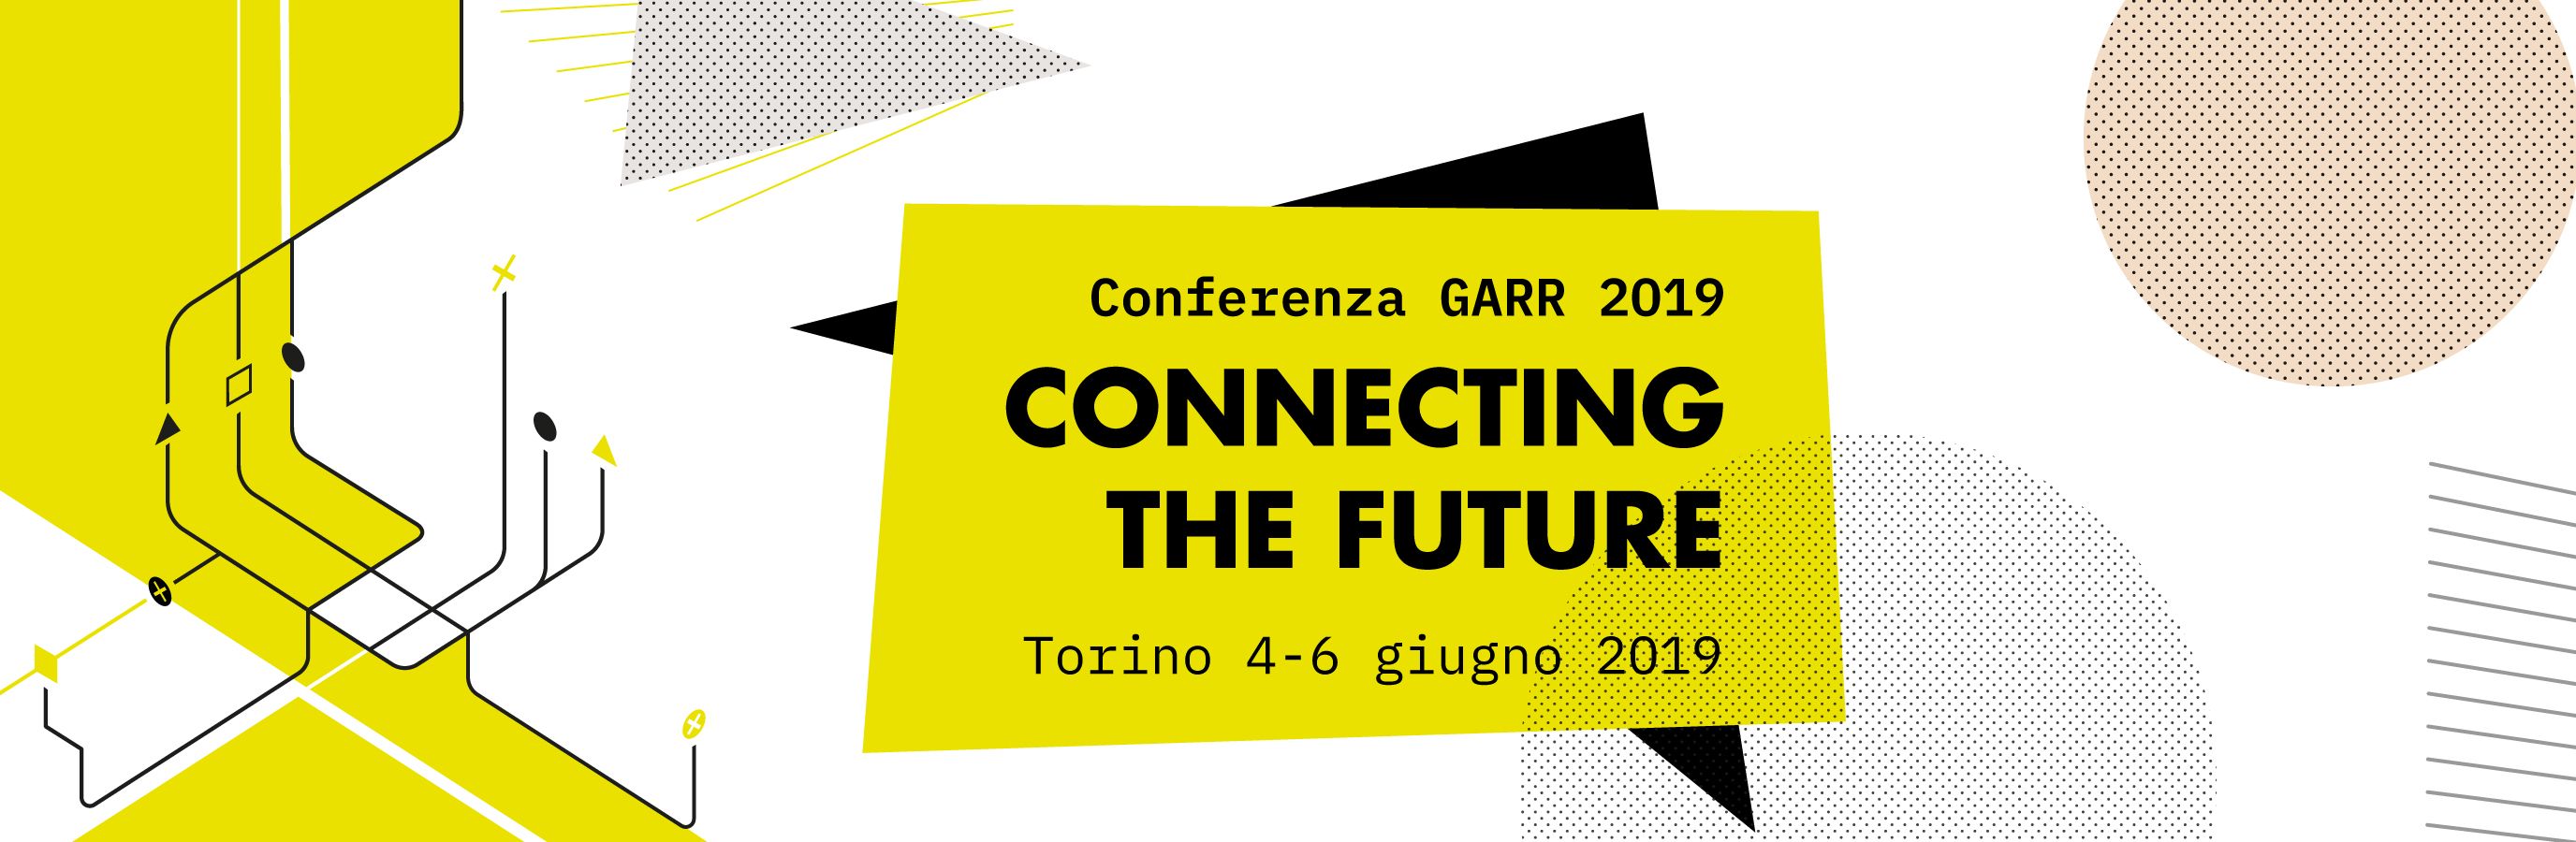 Conferenza GARR 2019